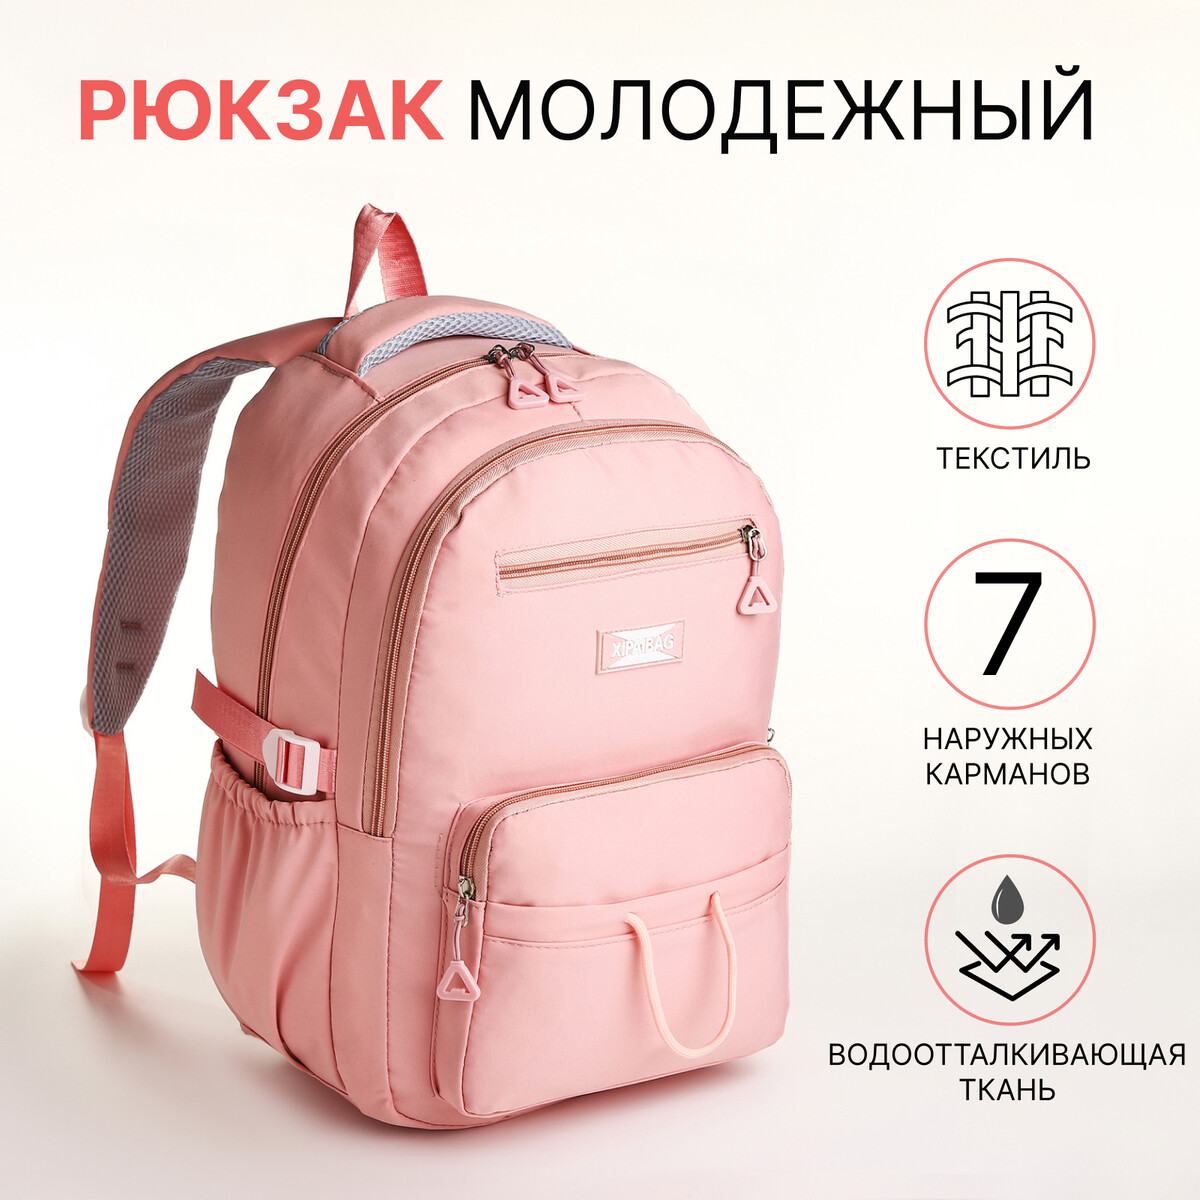 Рюкзак школьный из текстиля на молнии, 7 карманов, цвет розовый рюкзак школьный из текстиля 5 карманов розовый